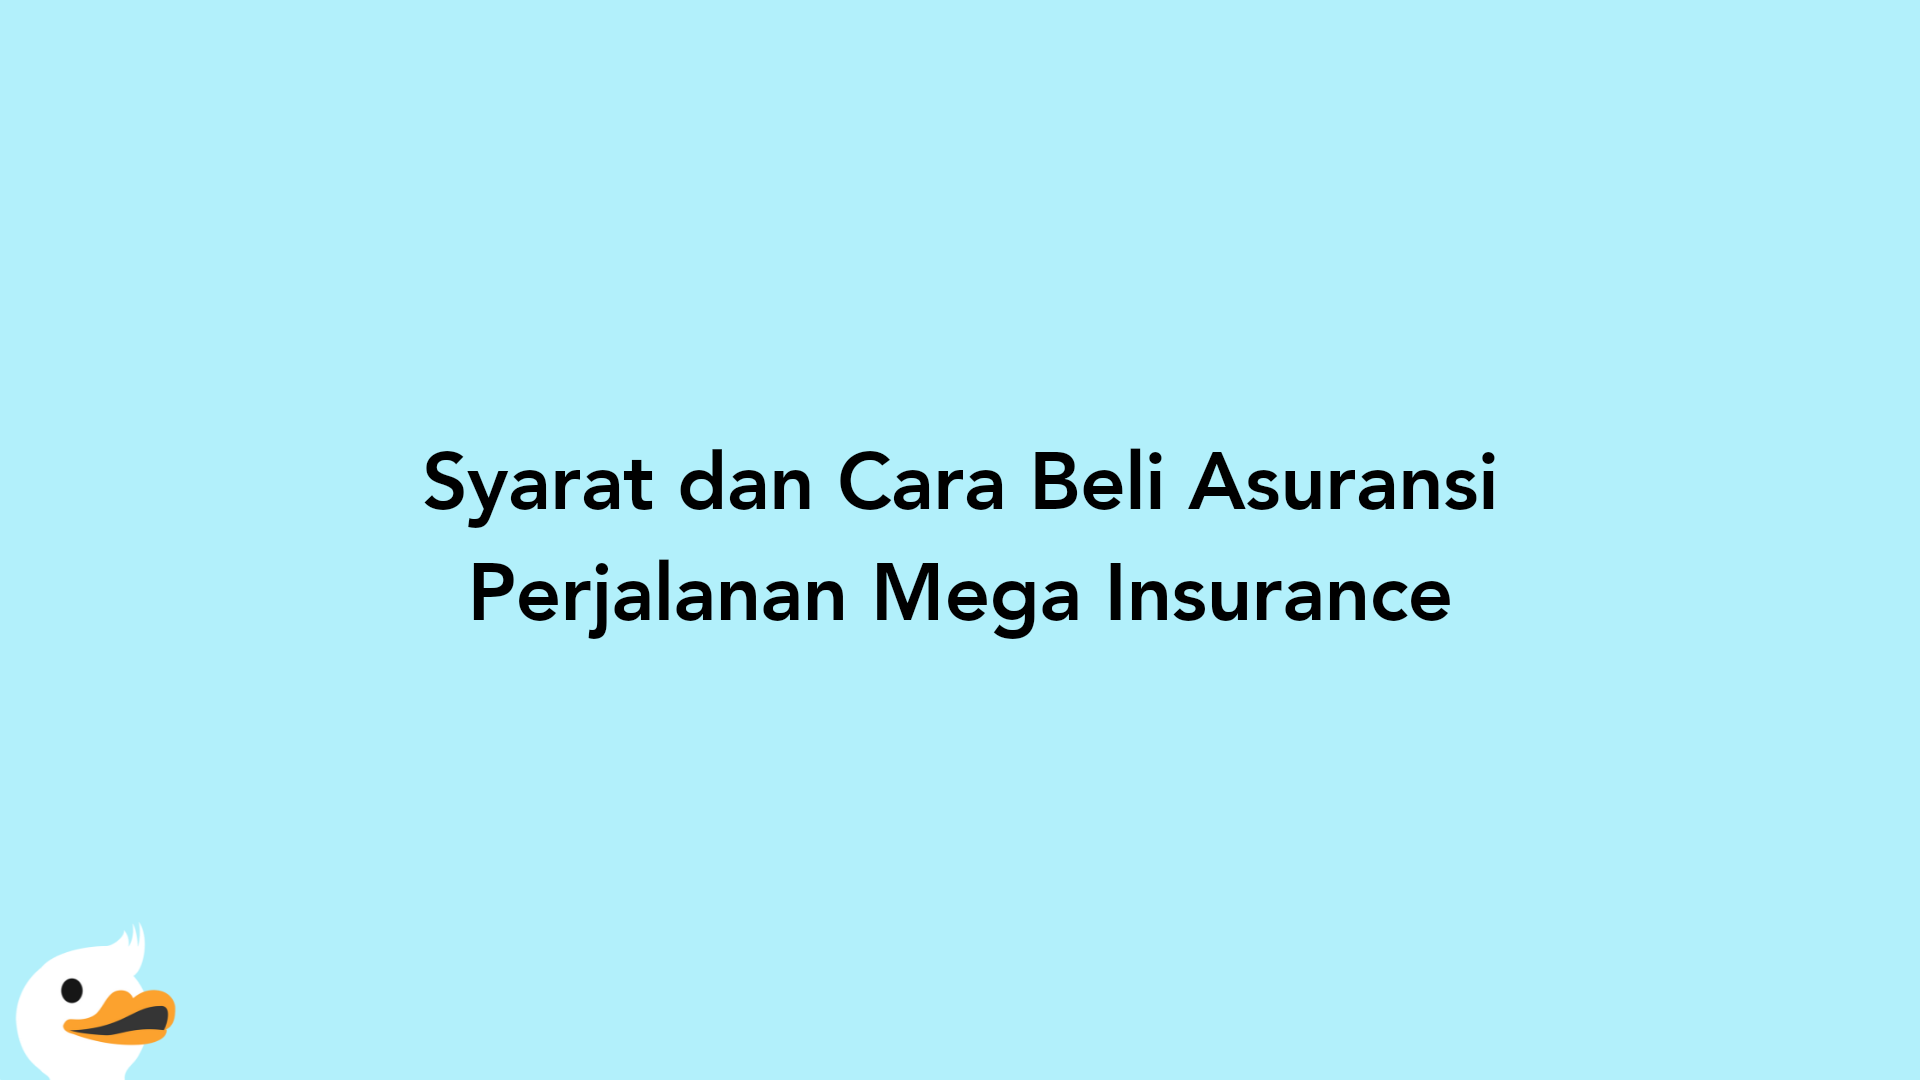 Syarat dan Cara Beli Asuransi Perjalanan Mega Insurance